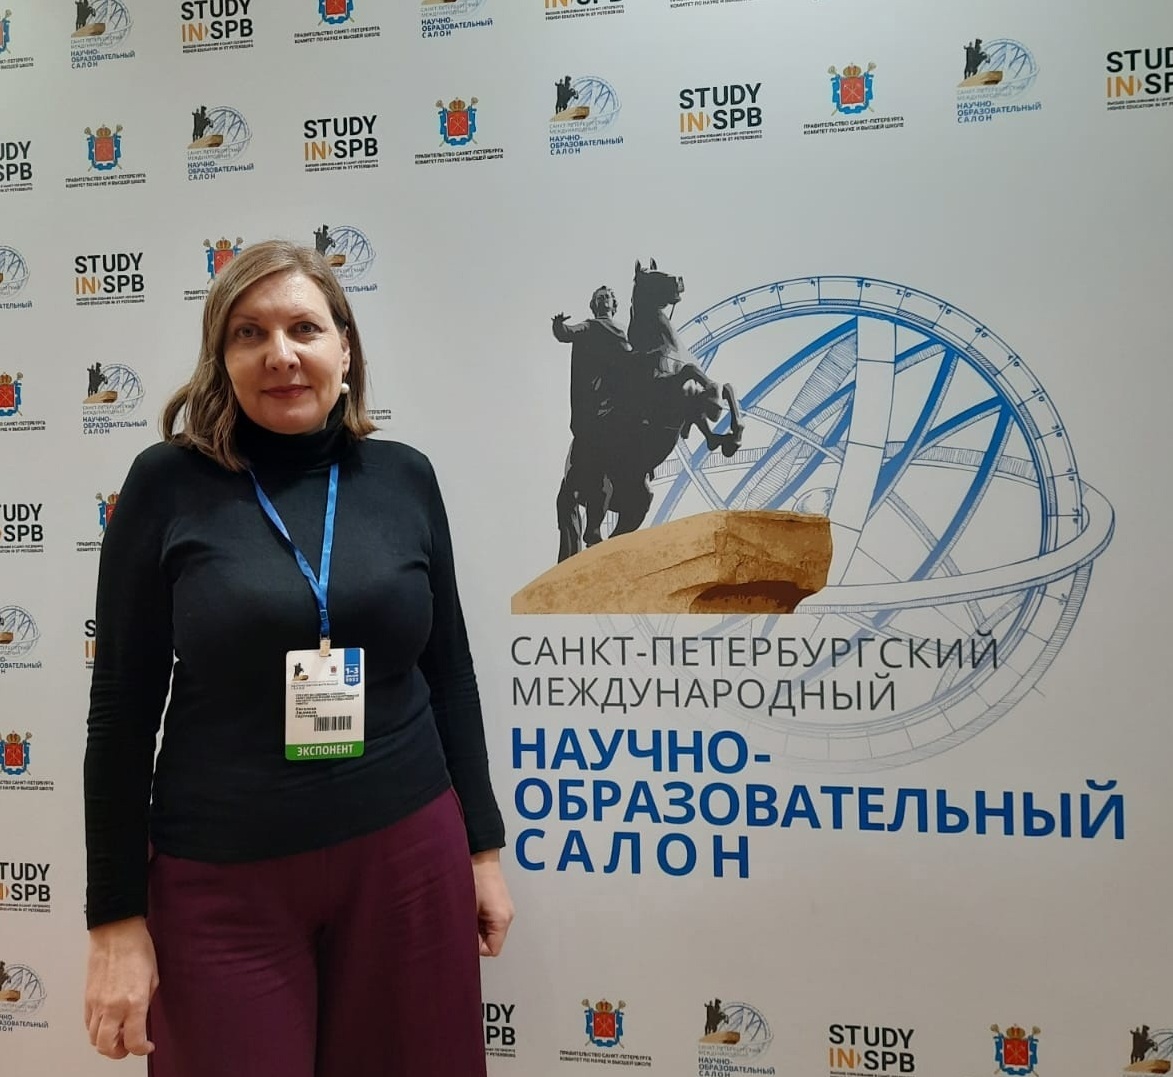 СПбГИПСР участвовал в Санкт-Петербургском международном научно-образовательном салоне